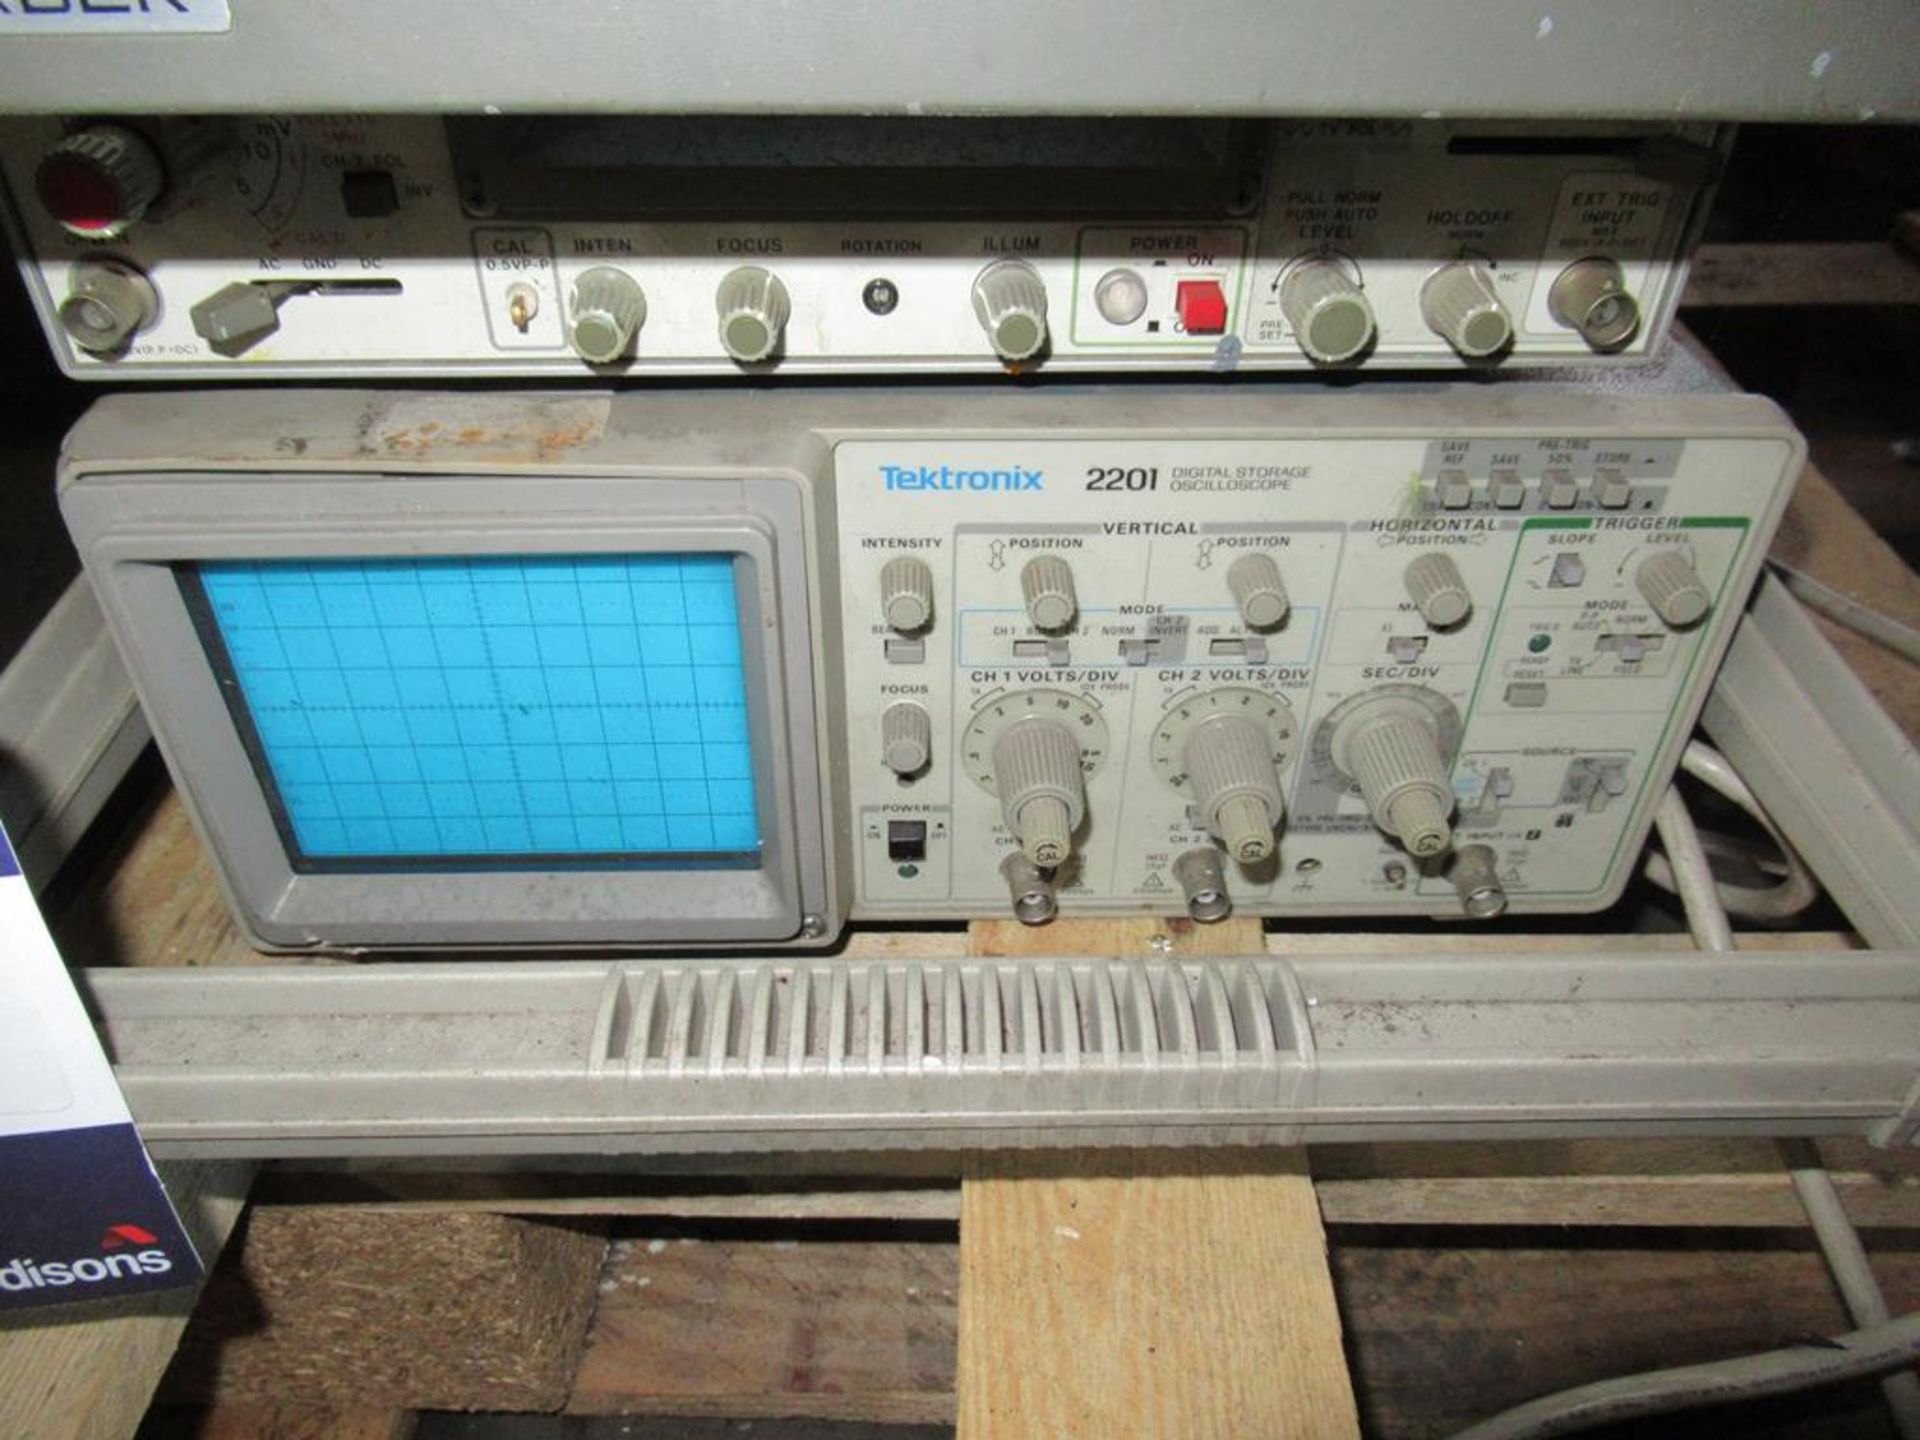 1x Leader LB0522 and Tek Tronix 2201 Portable Oscilloscopes - Image 3 of 3